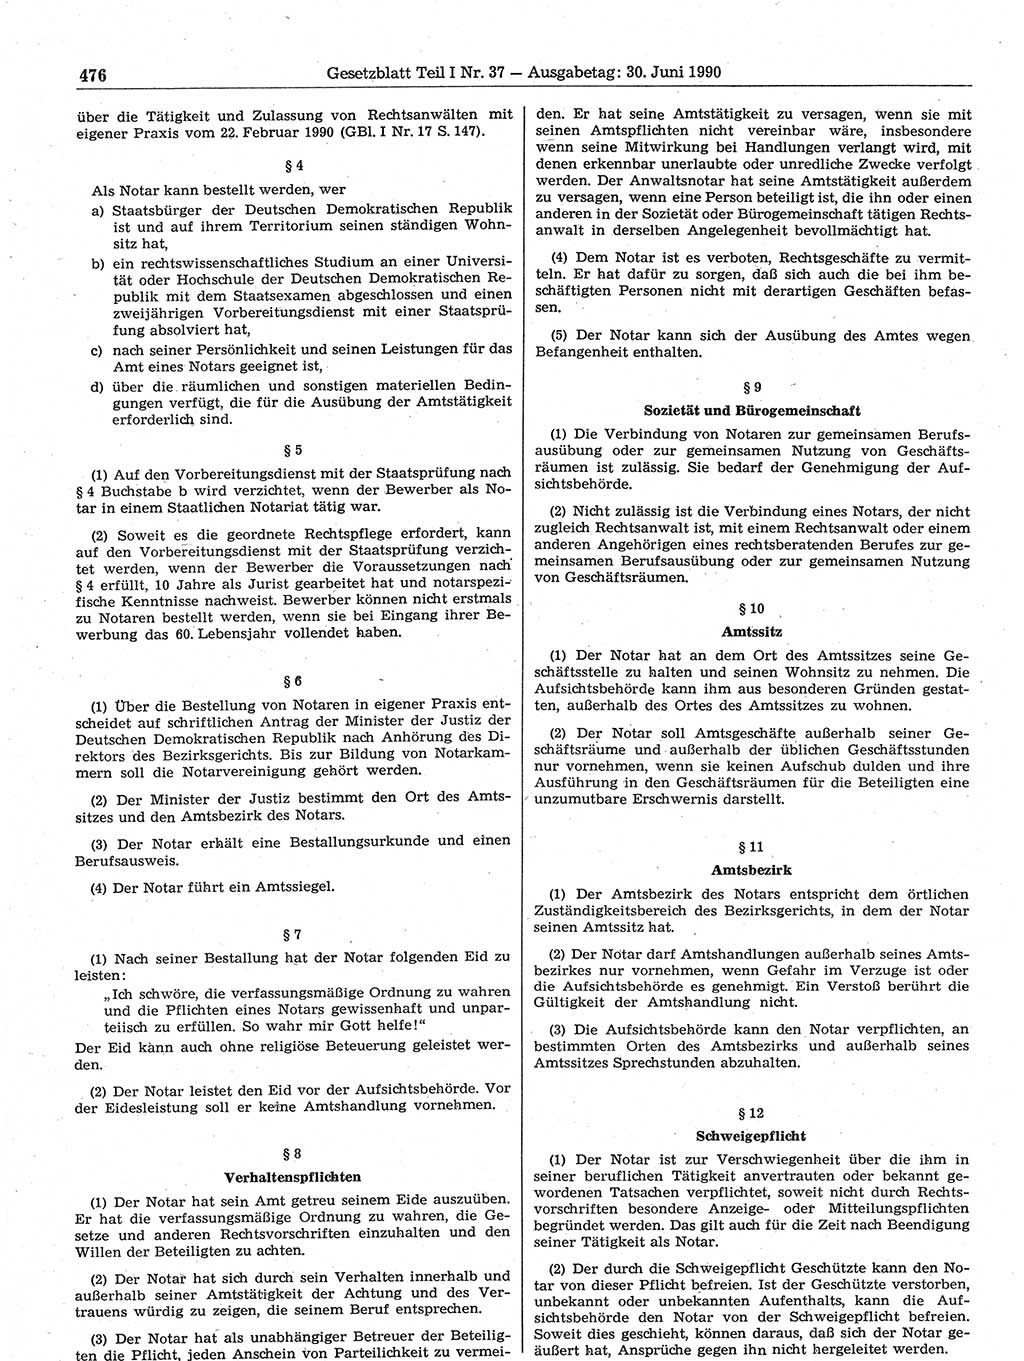 Gesetzblatt (GBl.) der Deutschen Demokratischen Republik (DDR) Teil Ⅰ 1990, Seite 476 (GBl. DDR Ⅰ 1990, S. 476)